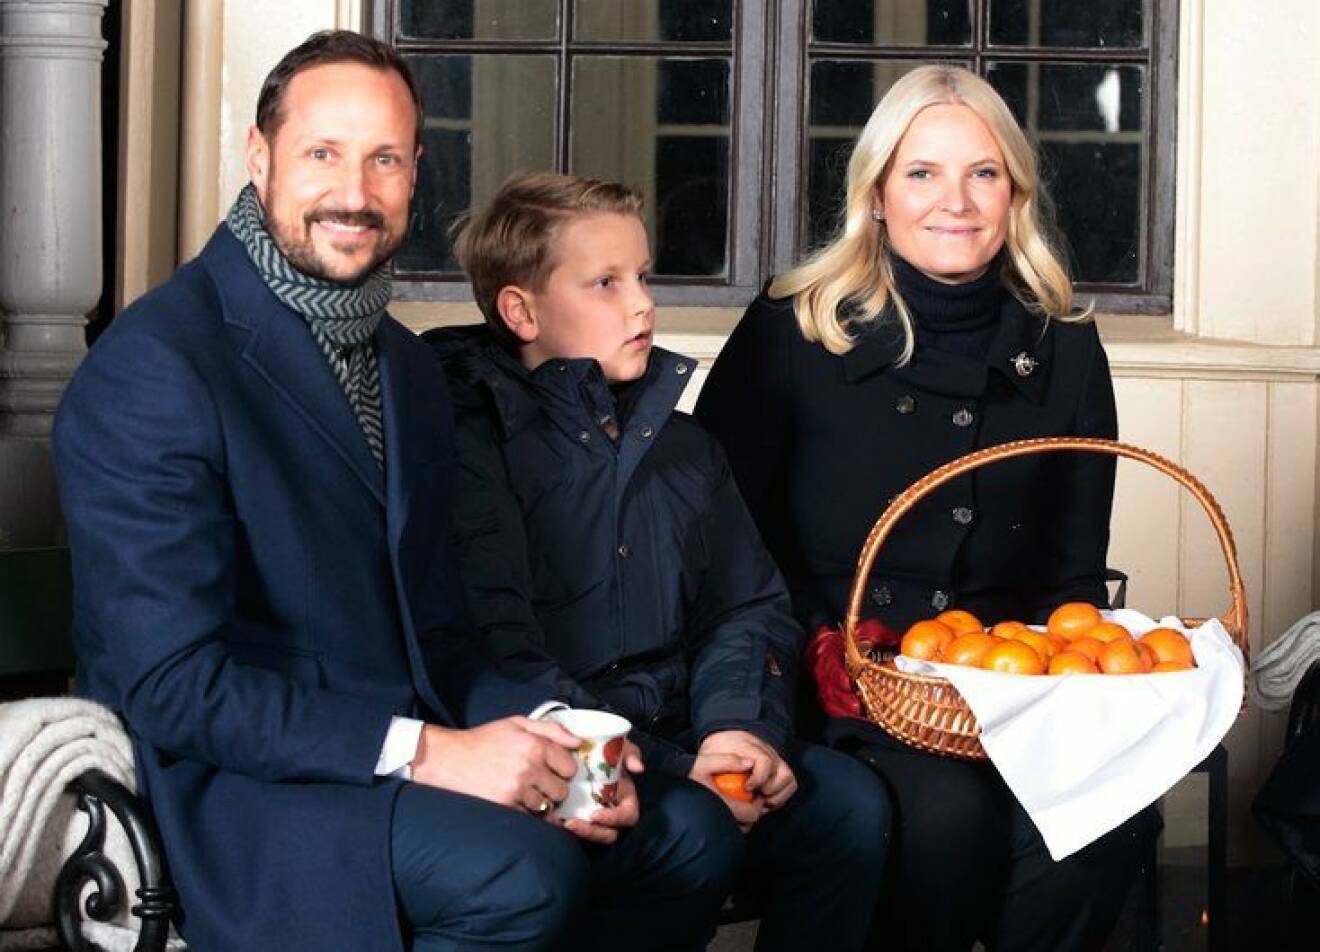 Kronprins Haakon, prins Sverre Magnus og kronprinsesse Mette-Marit drikker gl¯gg av kopper prinsesse Astrid har malt og spiser pepperkaker utenfor lysthuset pÂ Slottet i forbindelse med julefotografering tirsdag ettermiddag.